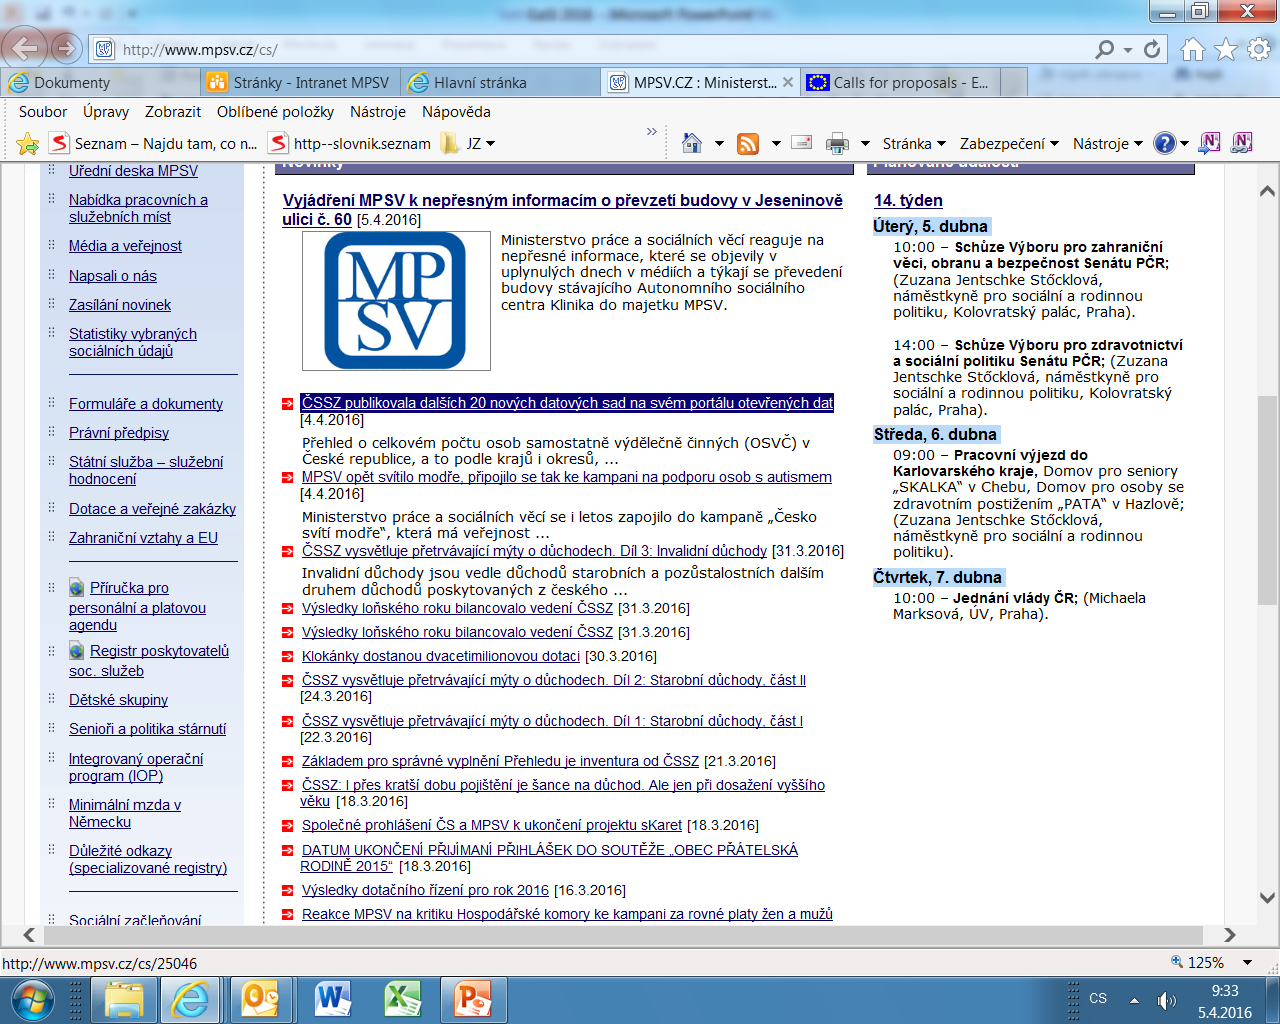 Internetové stránky MPSV